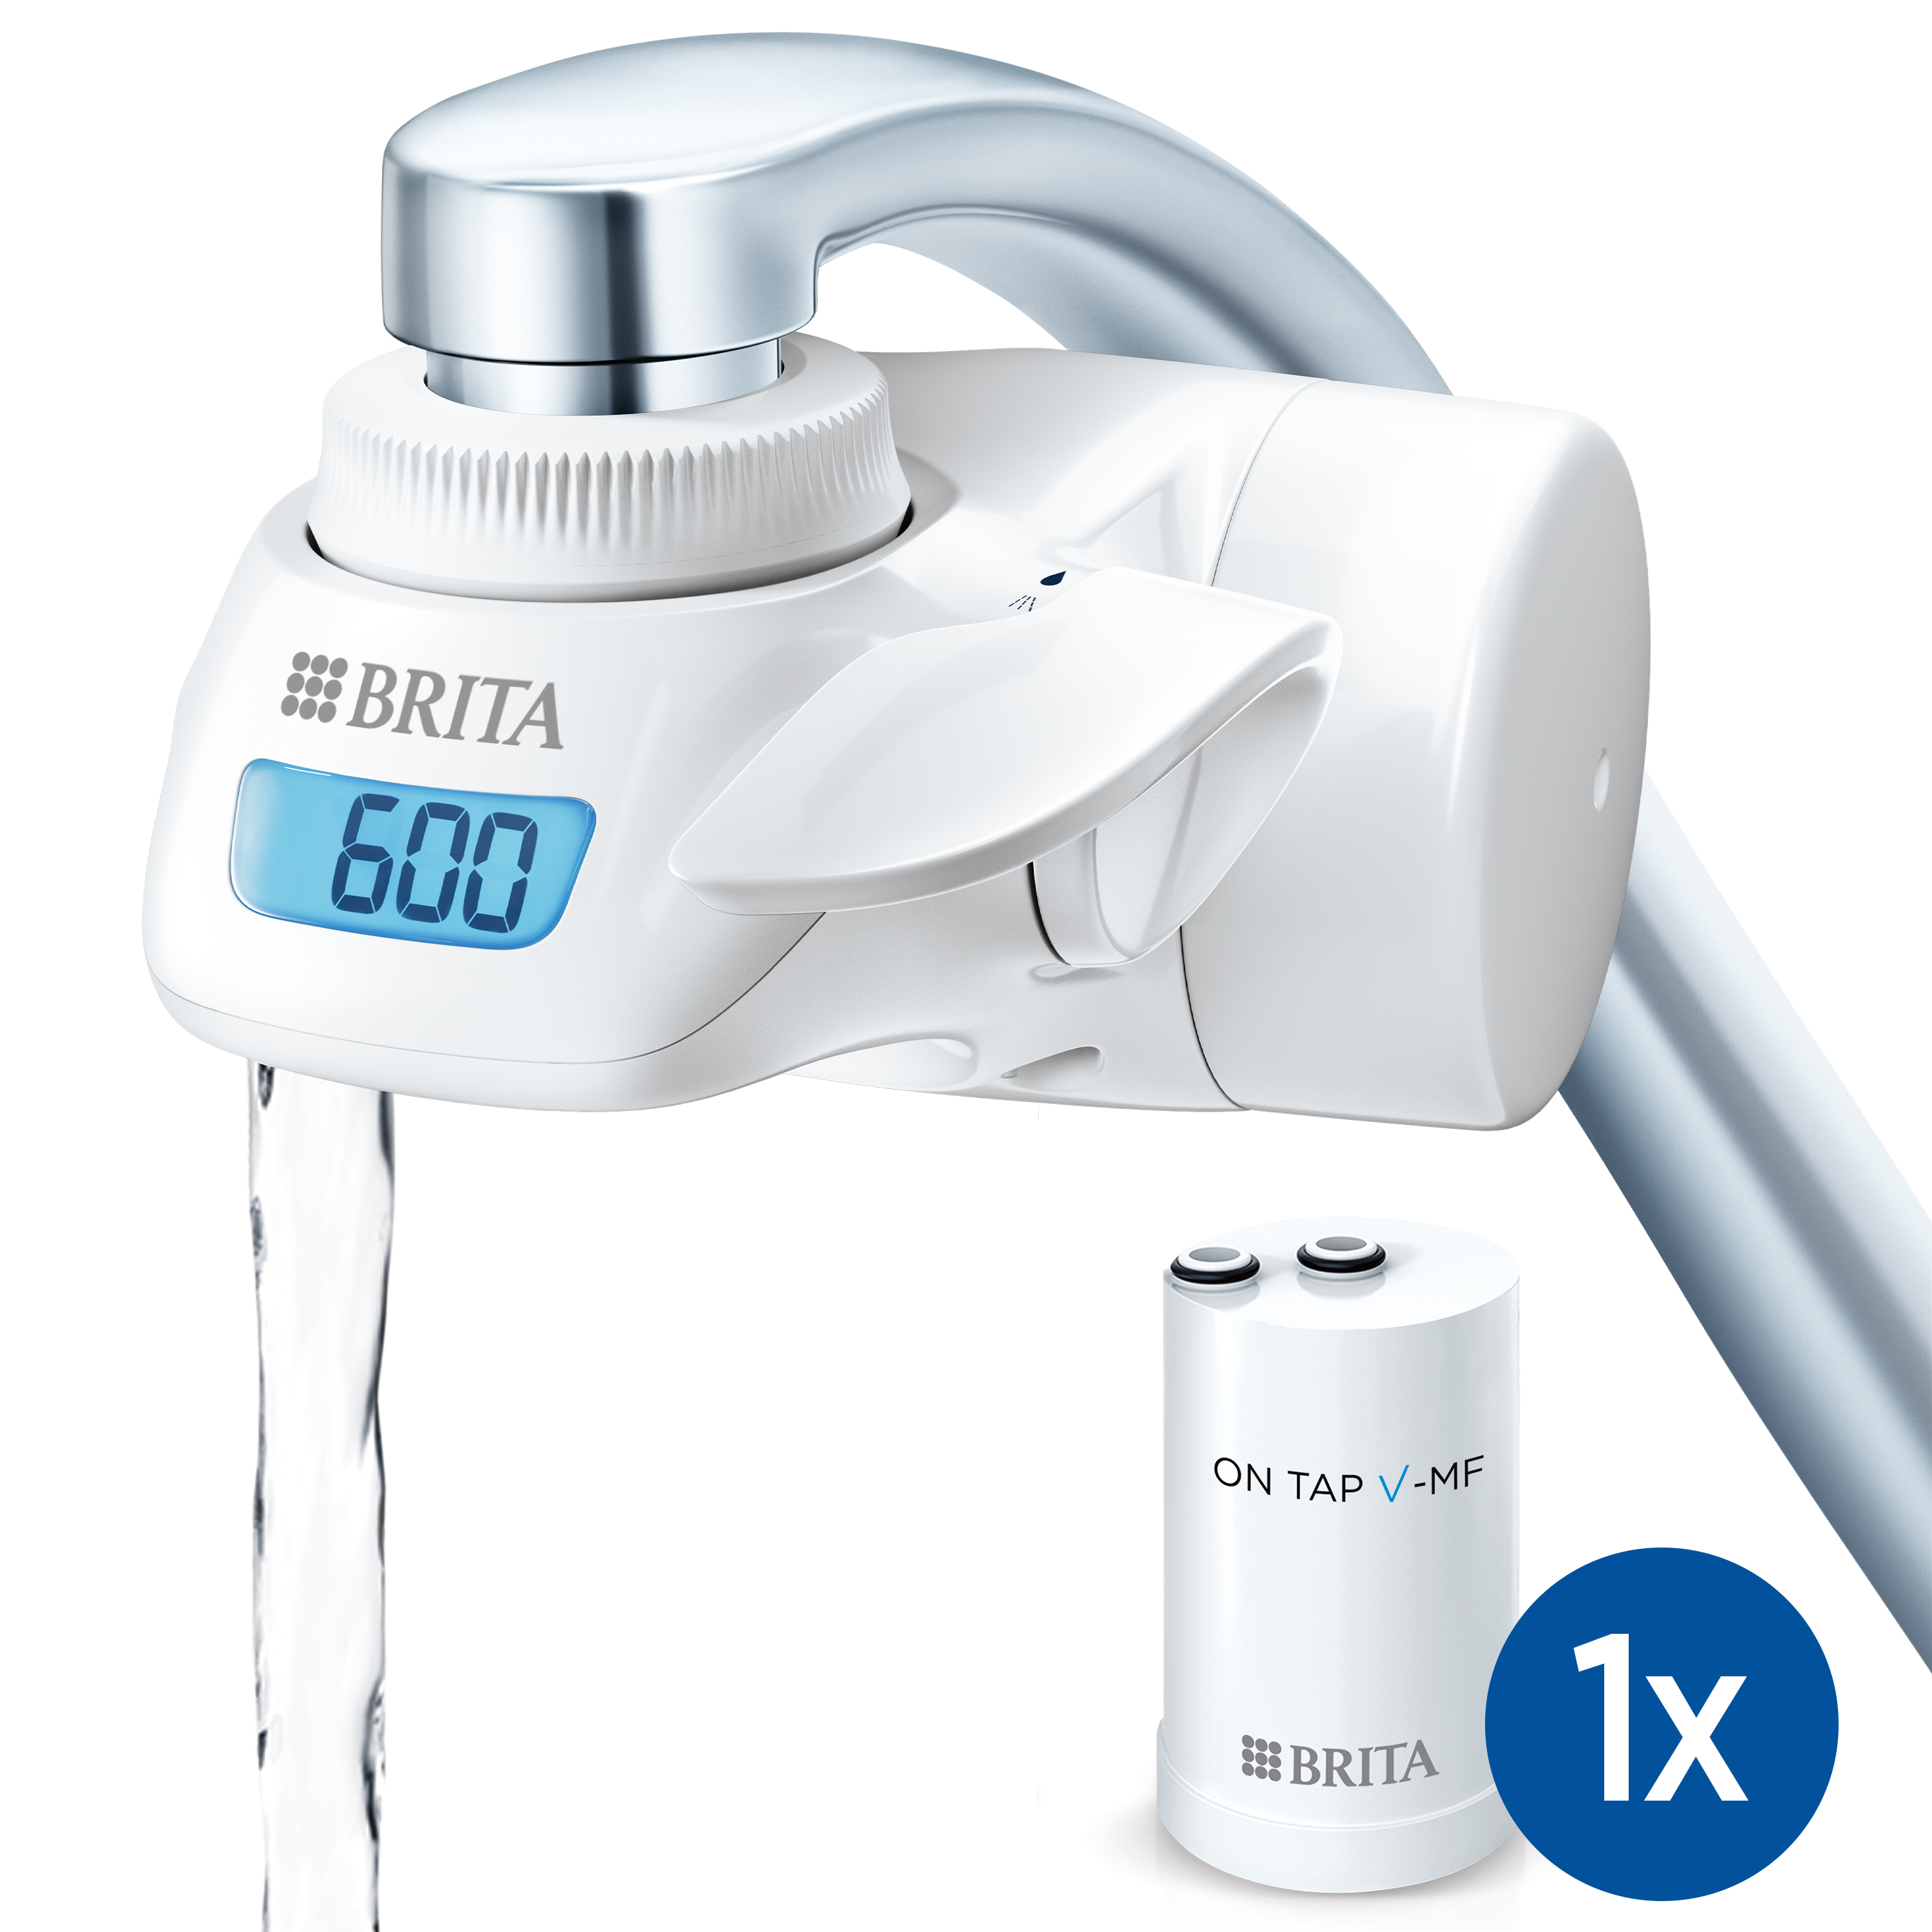 Brita - BRITA OnTap Sistema de Filtración de Agua para Grifo para 3-4 Meses, Filtra hasta 600 Litros de Agua e Incluye 1 Filtro On Tap, con Pantalla Digital LCD, Blanco 